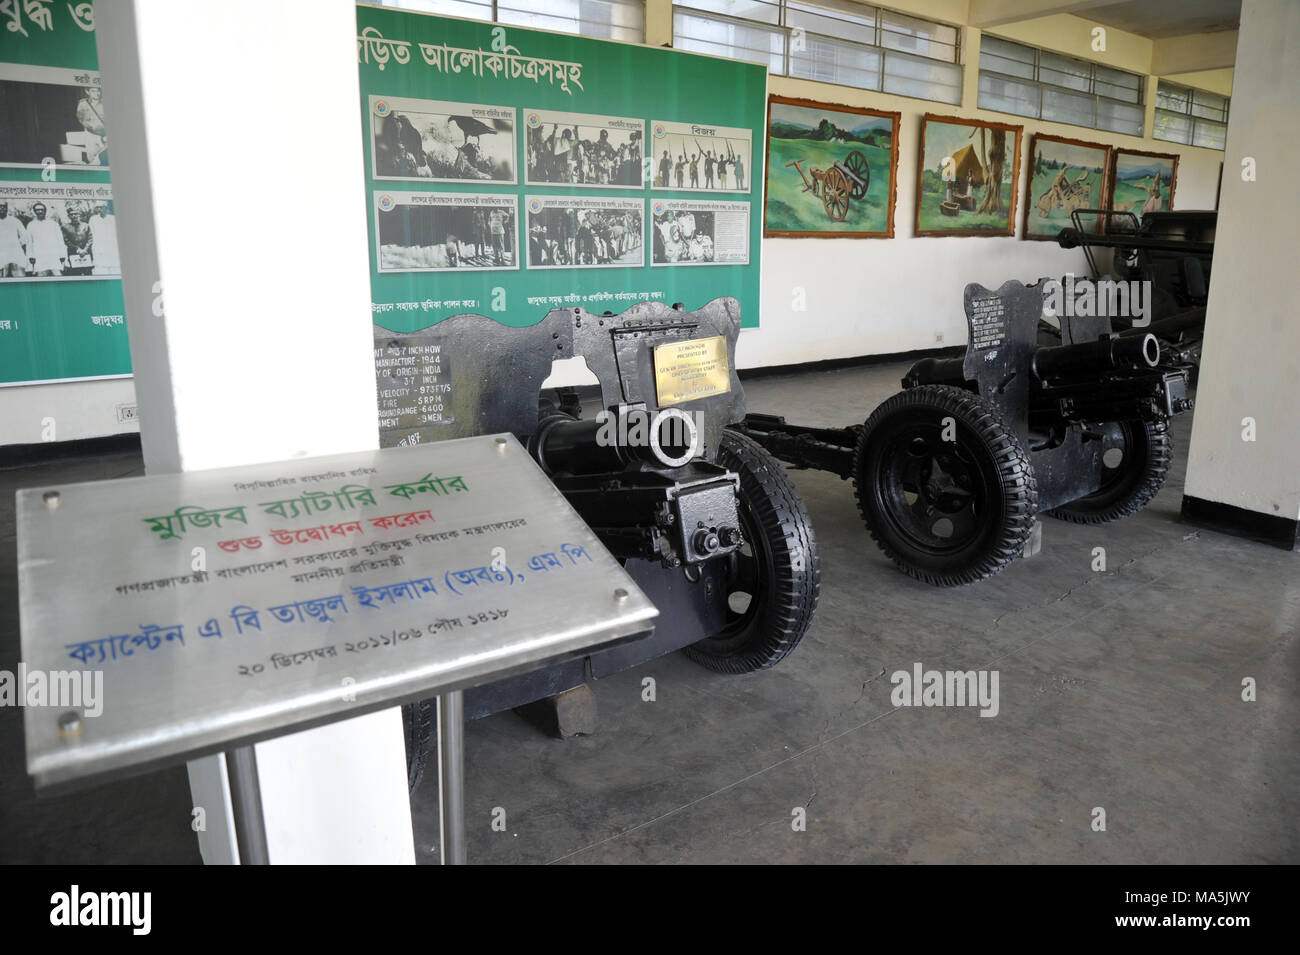 Military museum in Dhaka, Bangladesh Stock Photo